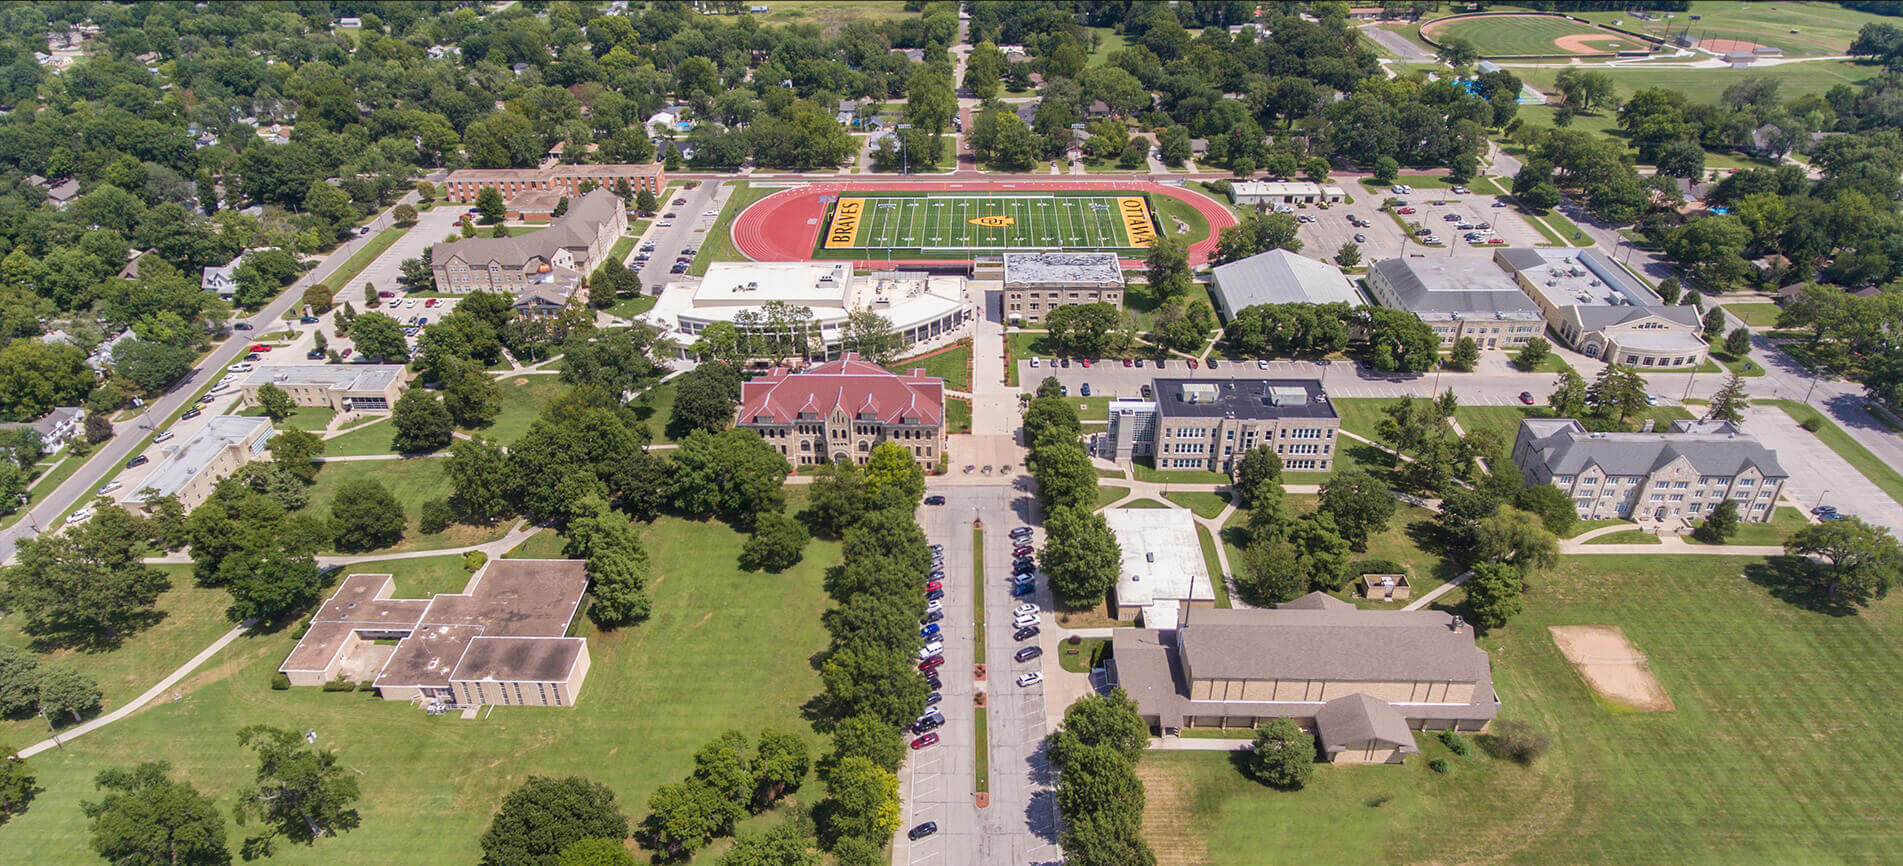 Ottawa University, Kansas Campus, Virtual Map